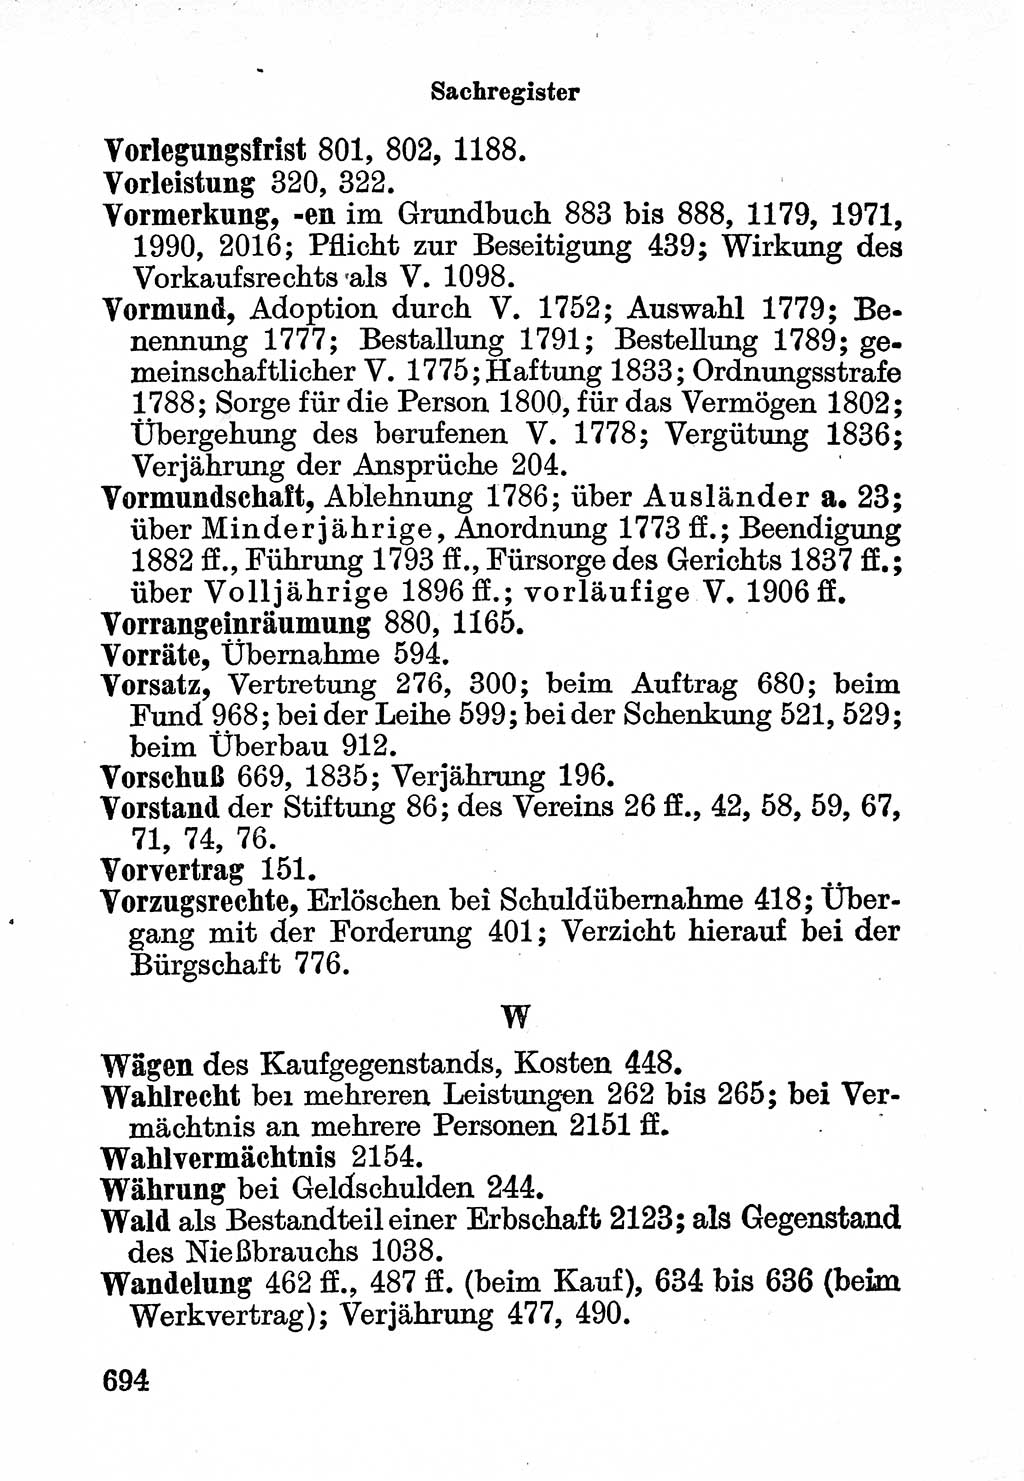 Bürgerliches Gesetzbuch (BGB) nebst wichtigen Nebengesetzen [Deutsche Demokratische Republik (DDR)] 1956, Seite 694 (BGB Nebenges. DDR 1956, S. 694)